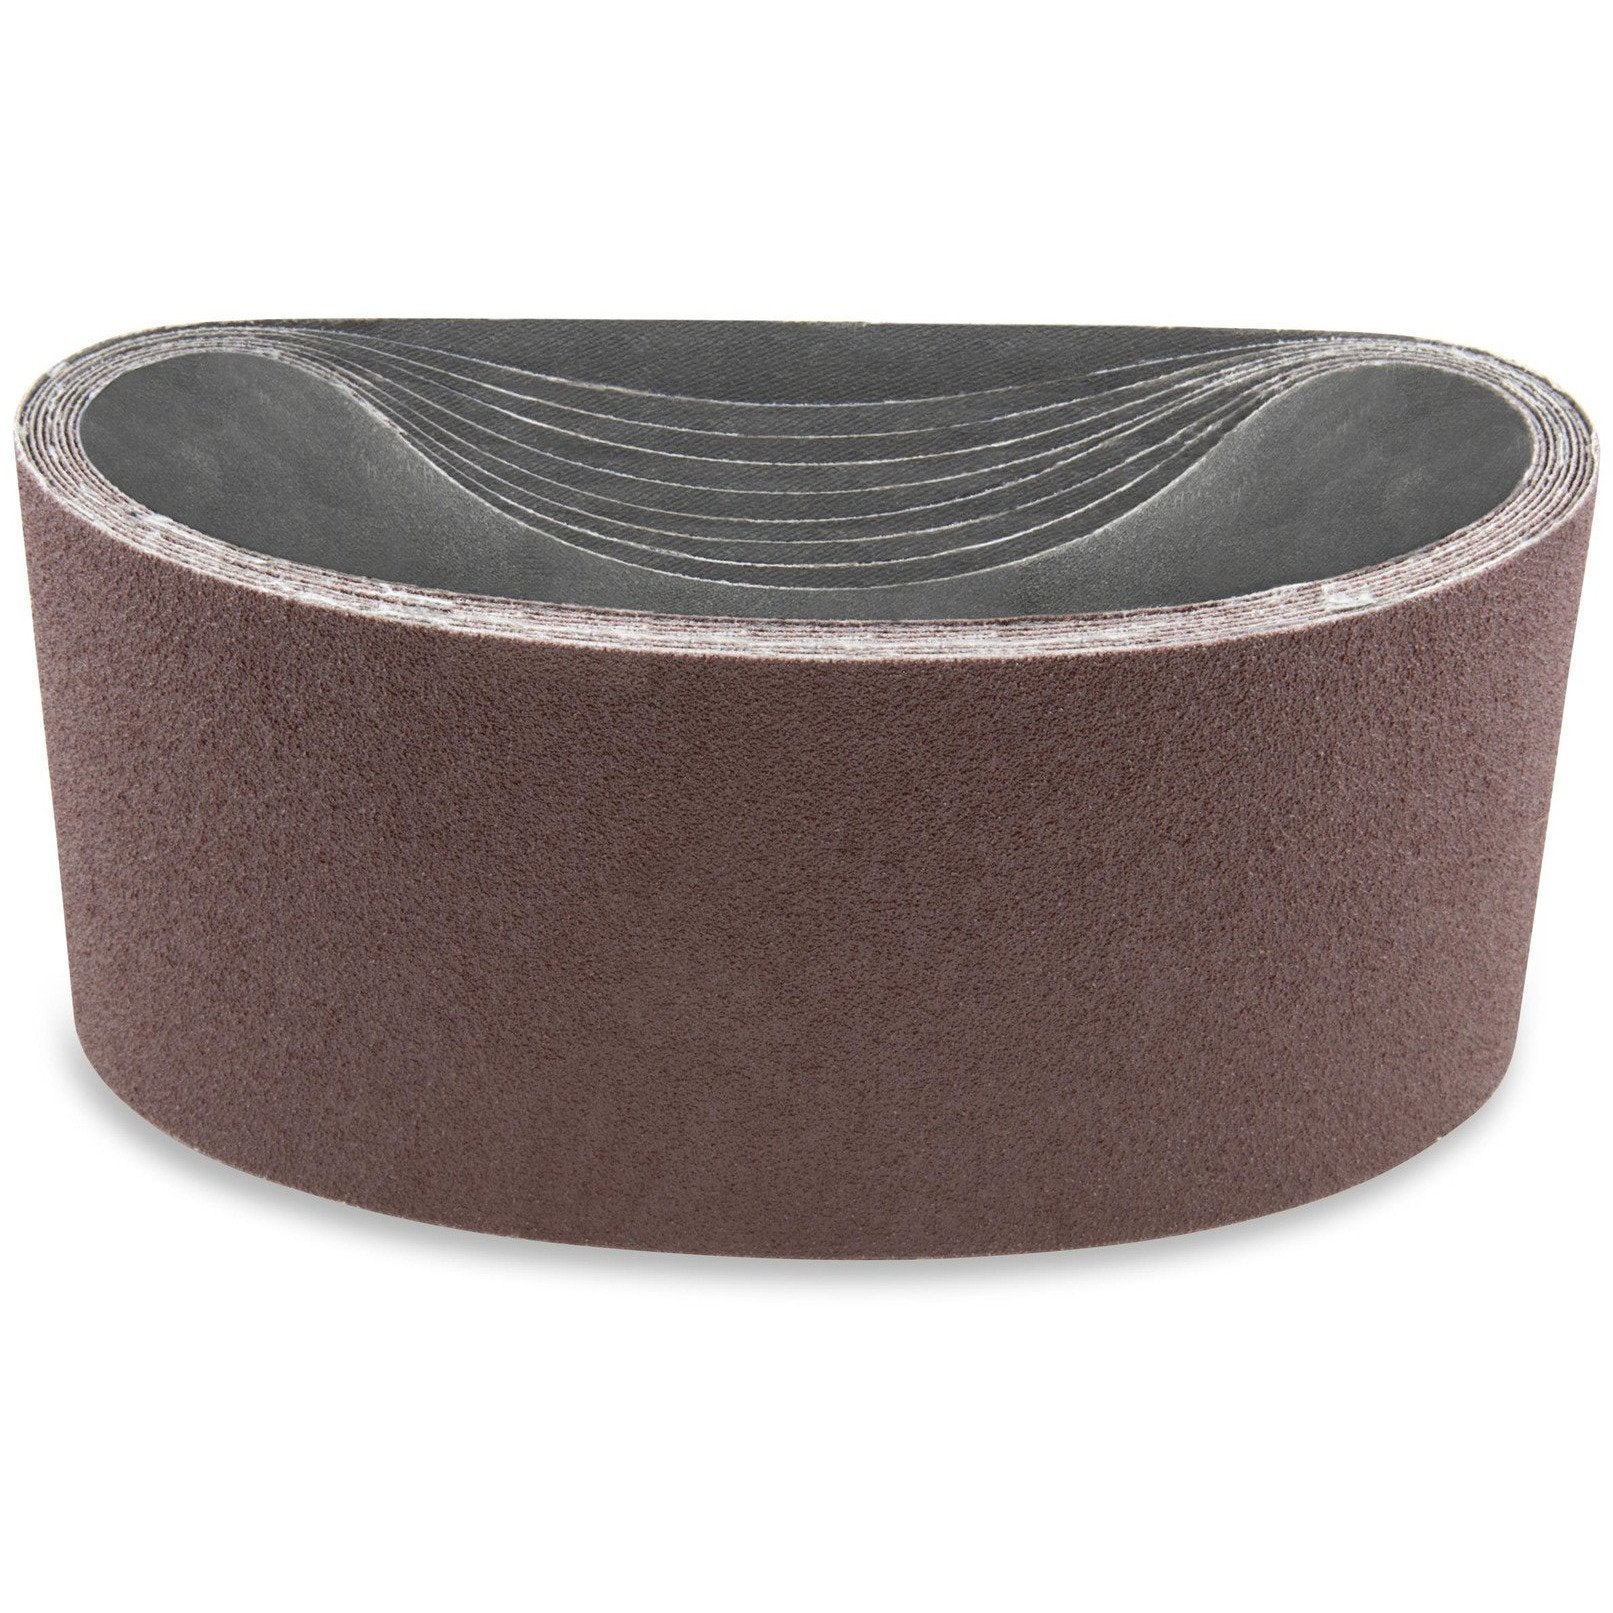 2 1/2 X 14 Inch Aluminum Oxide Sanding Belts, 6 Pack - Red Label Abrasives